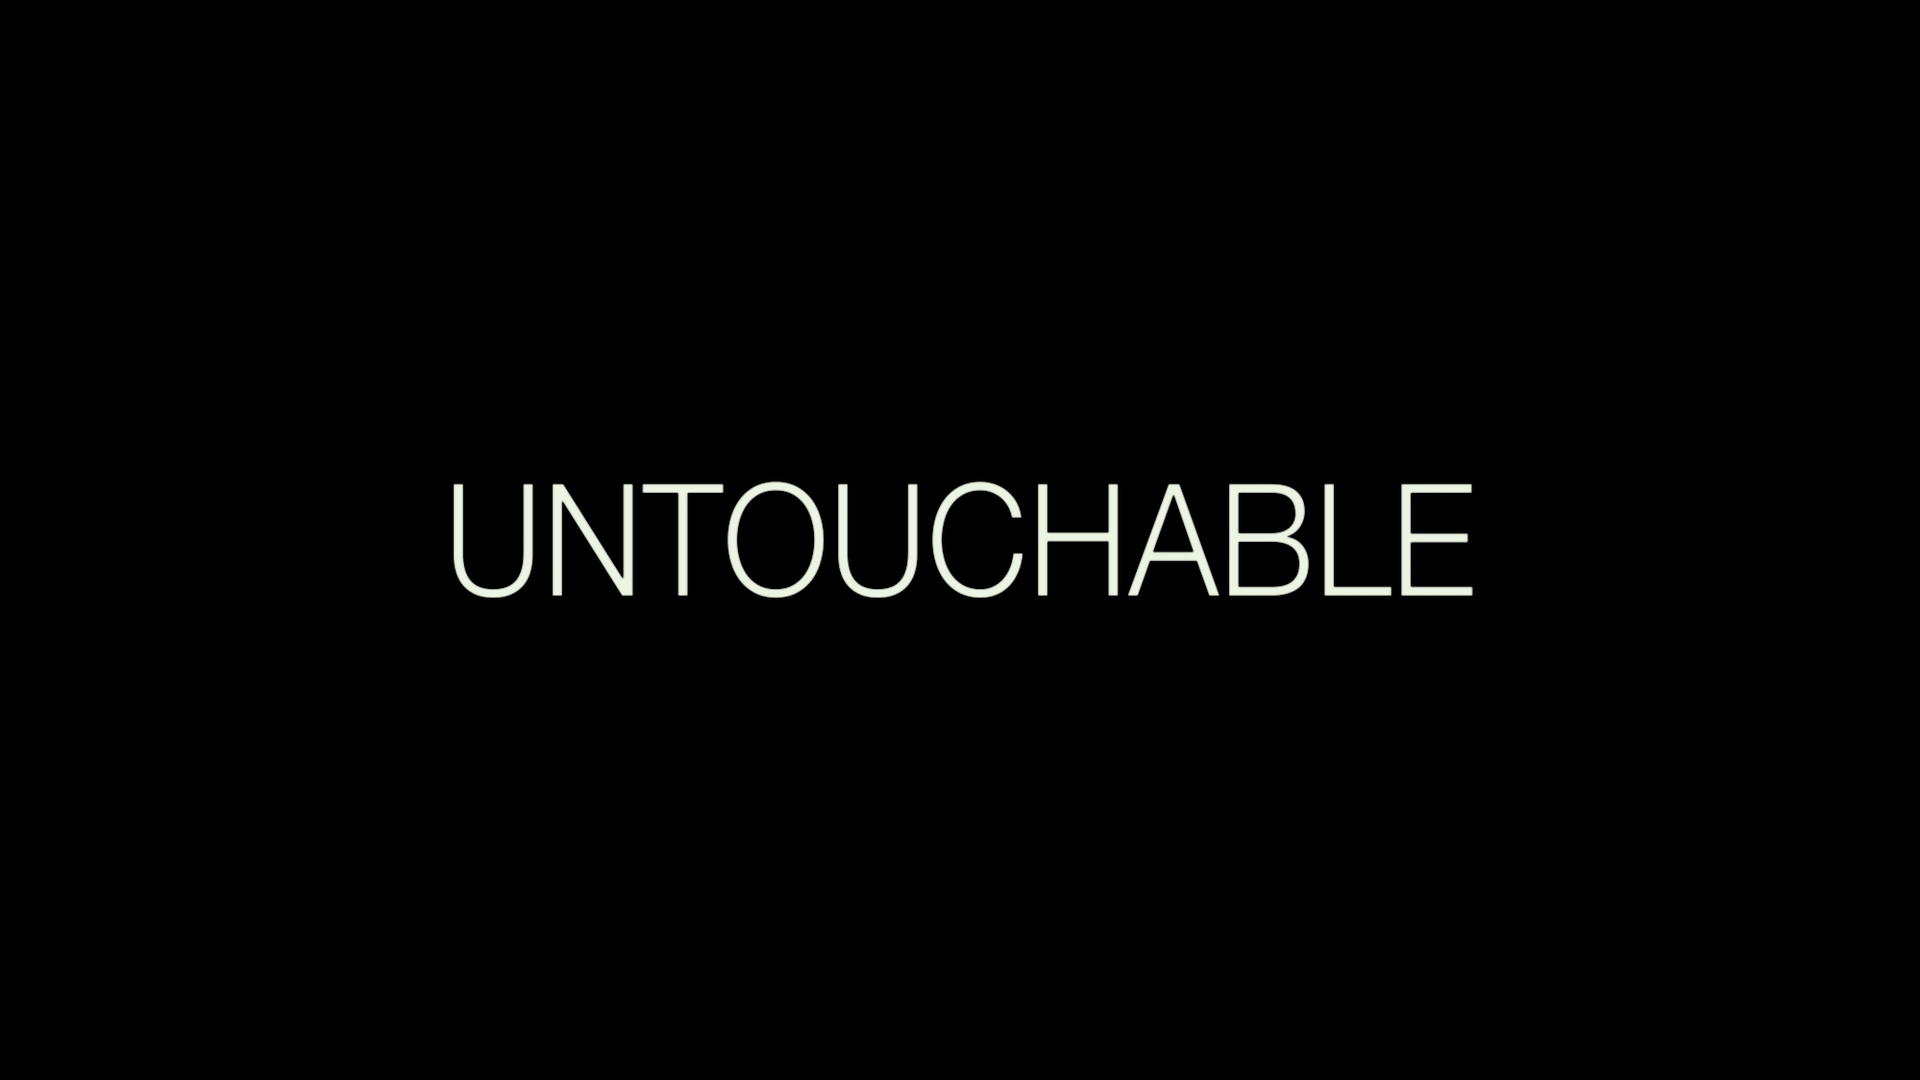 Текст песни untouchable. Антачибл мияги. Untouchable. Untouchable надпись. Untouchable обложка.